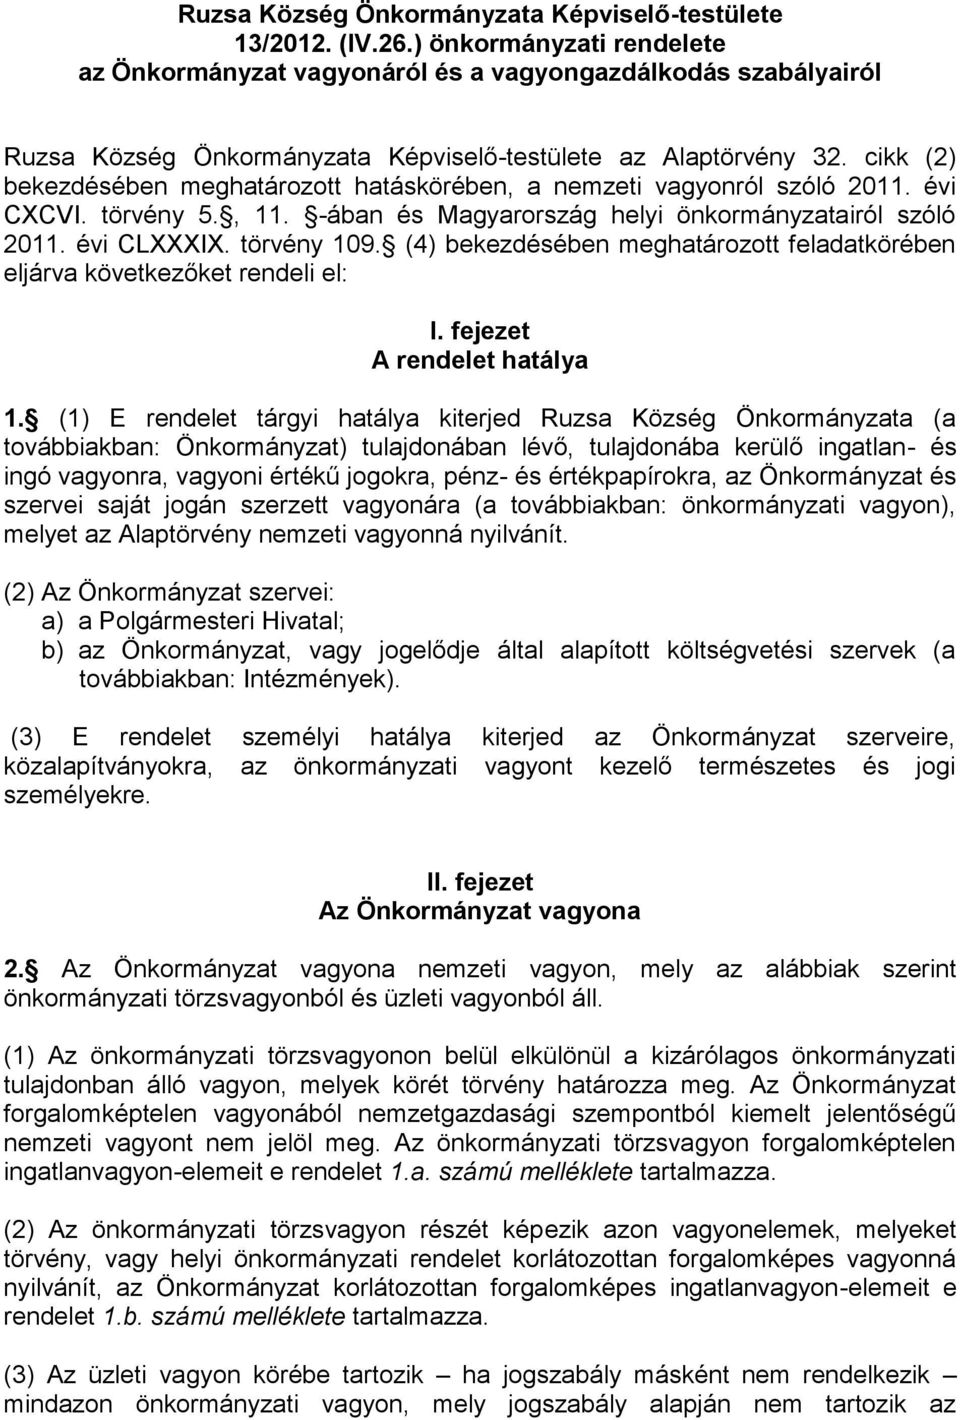 cikk (2) bekezdésében meghatározott hatáskörében, a nemzeti vagyonról szóló 2011. évi CXCVI. törvény 5., 11. -ában és Magyarország helyi önkormányzatairól szóló 2011. évi CLXXXIX. törvény 109.